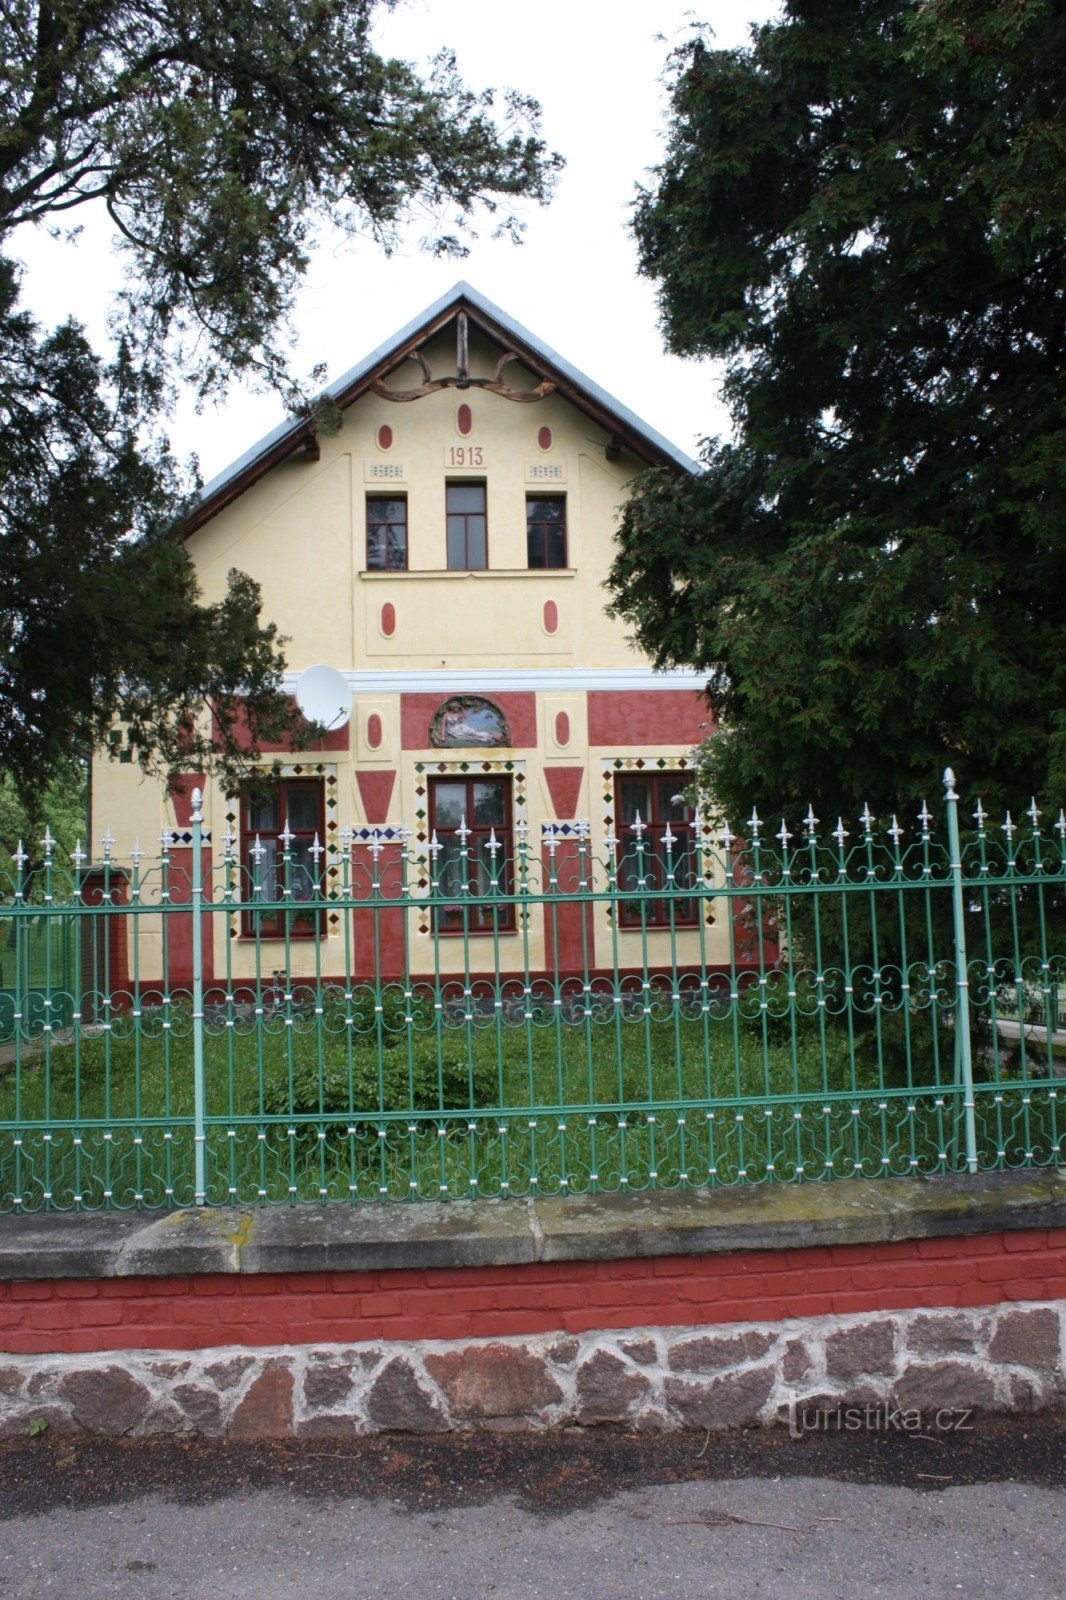 Фермерський будинок у стилі модерн у селі Лучки біля Слатинян